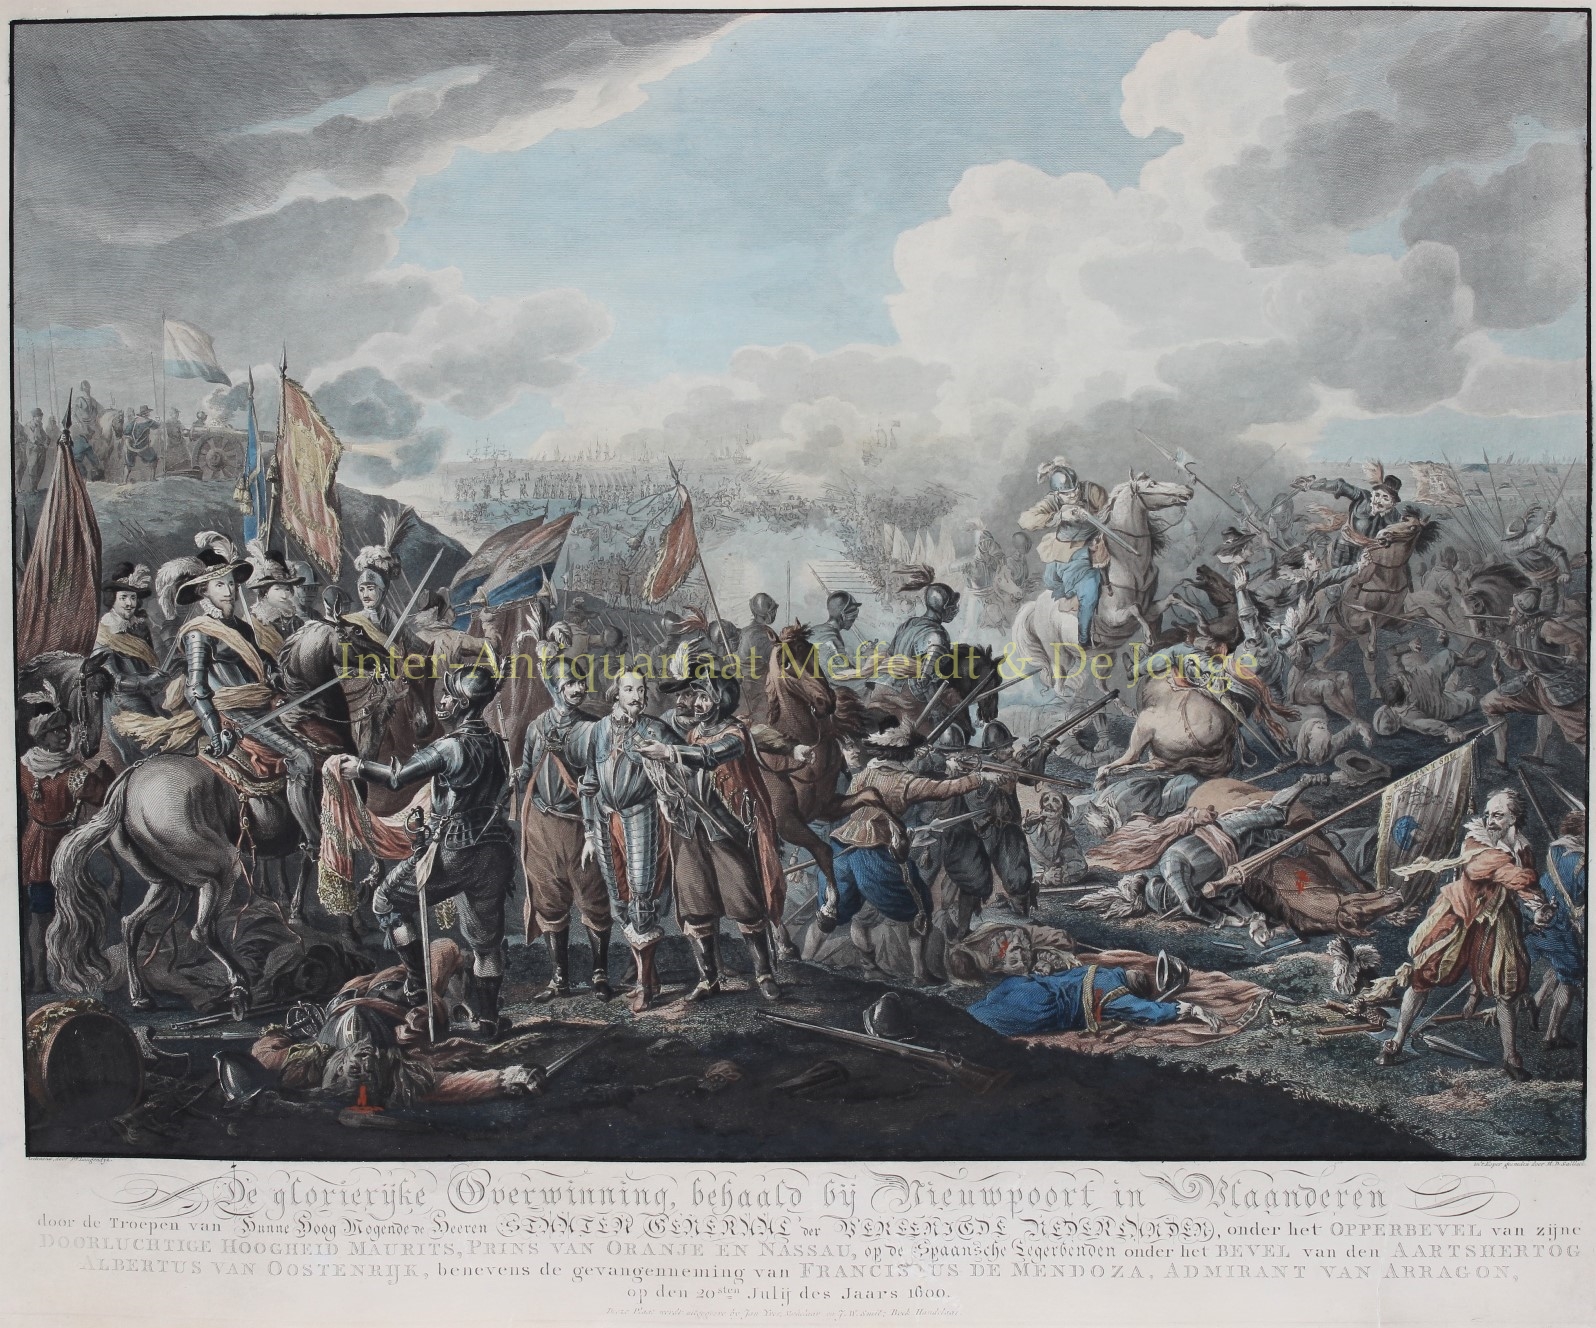 Sallieth-- Matthias de - Slag bij Nieuwpoort - Matthias de Sallieth naar Dirk Langedijk, 1783